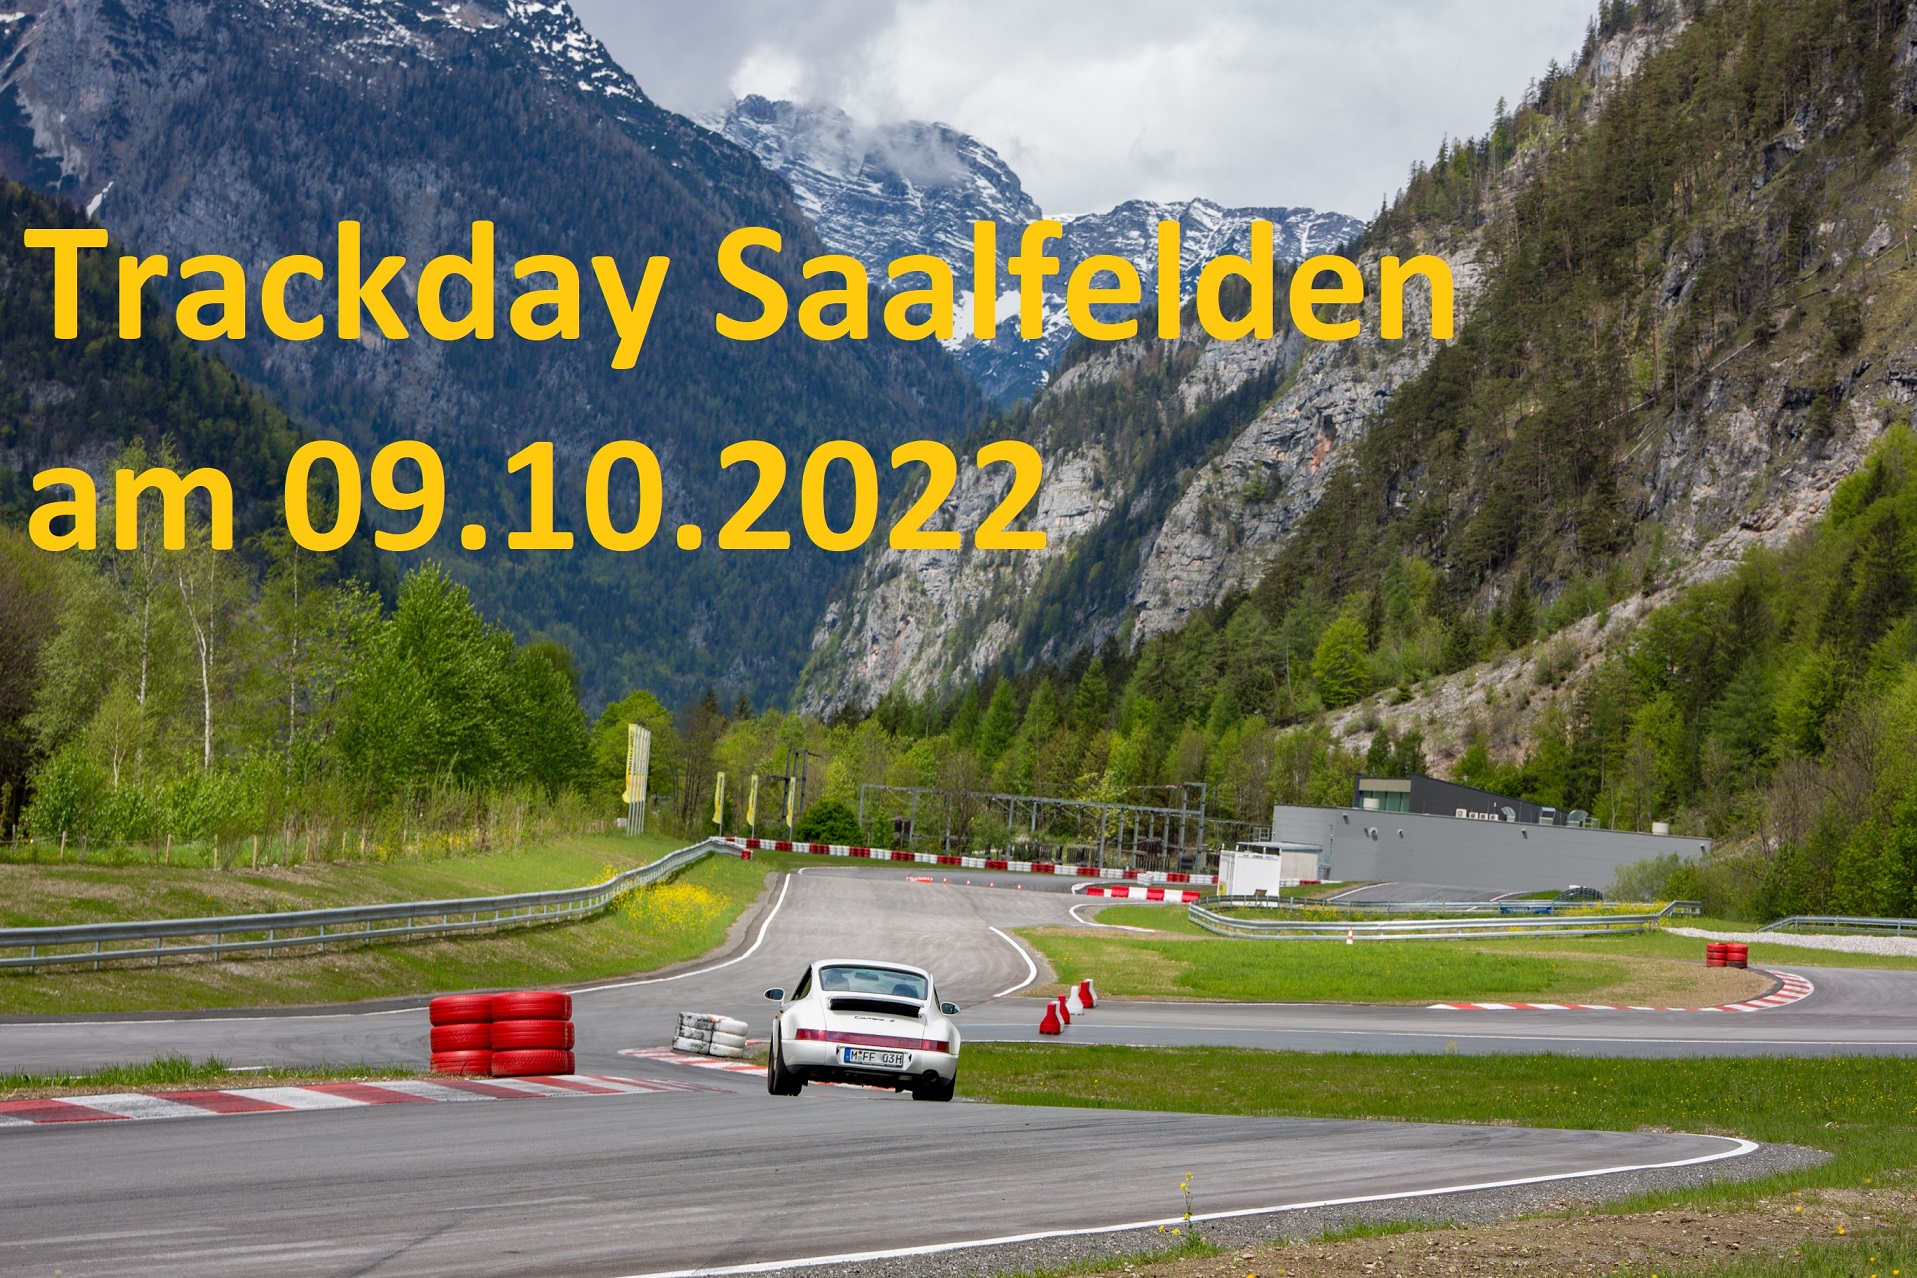 Trackday Saalfelden 09102022